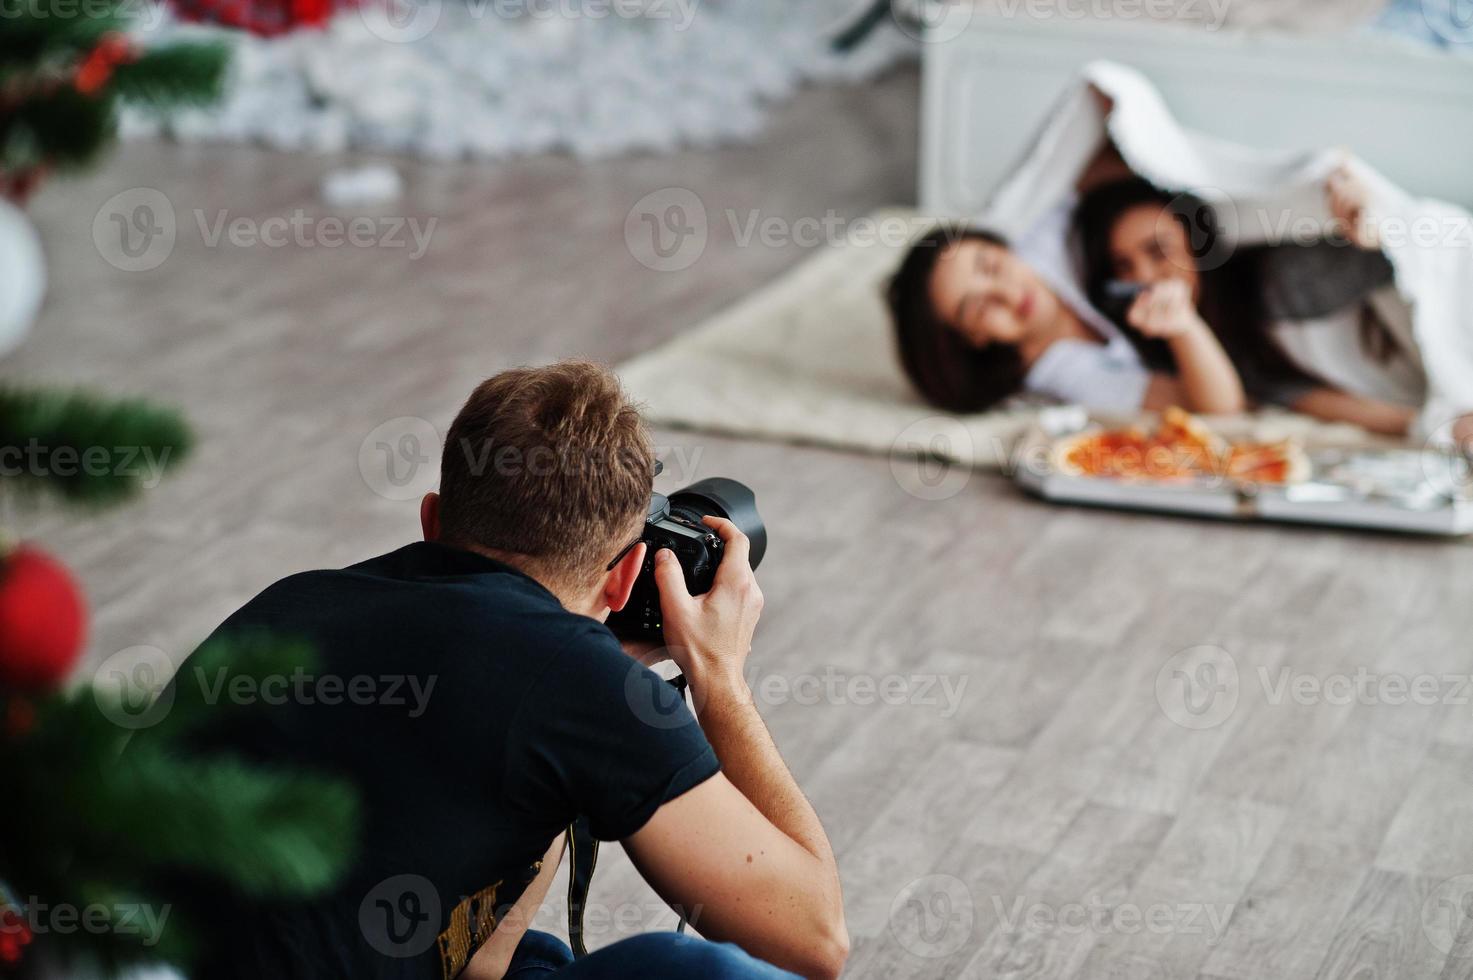 man fotograf fotografera på studio tvillingar flickor som äter pizza. professionell fotograf på jobbet. foto